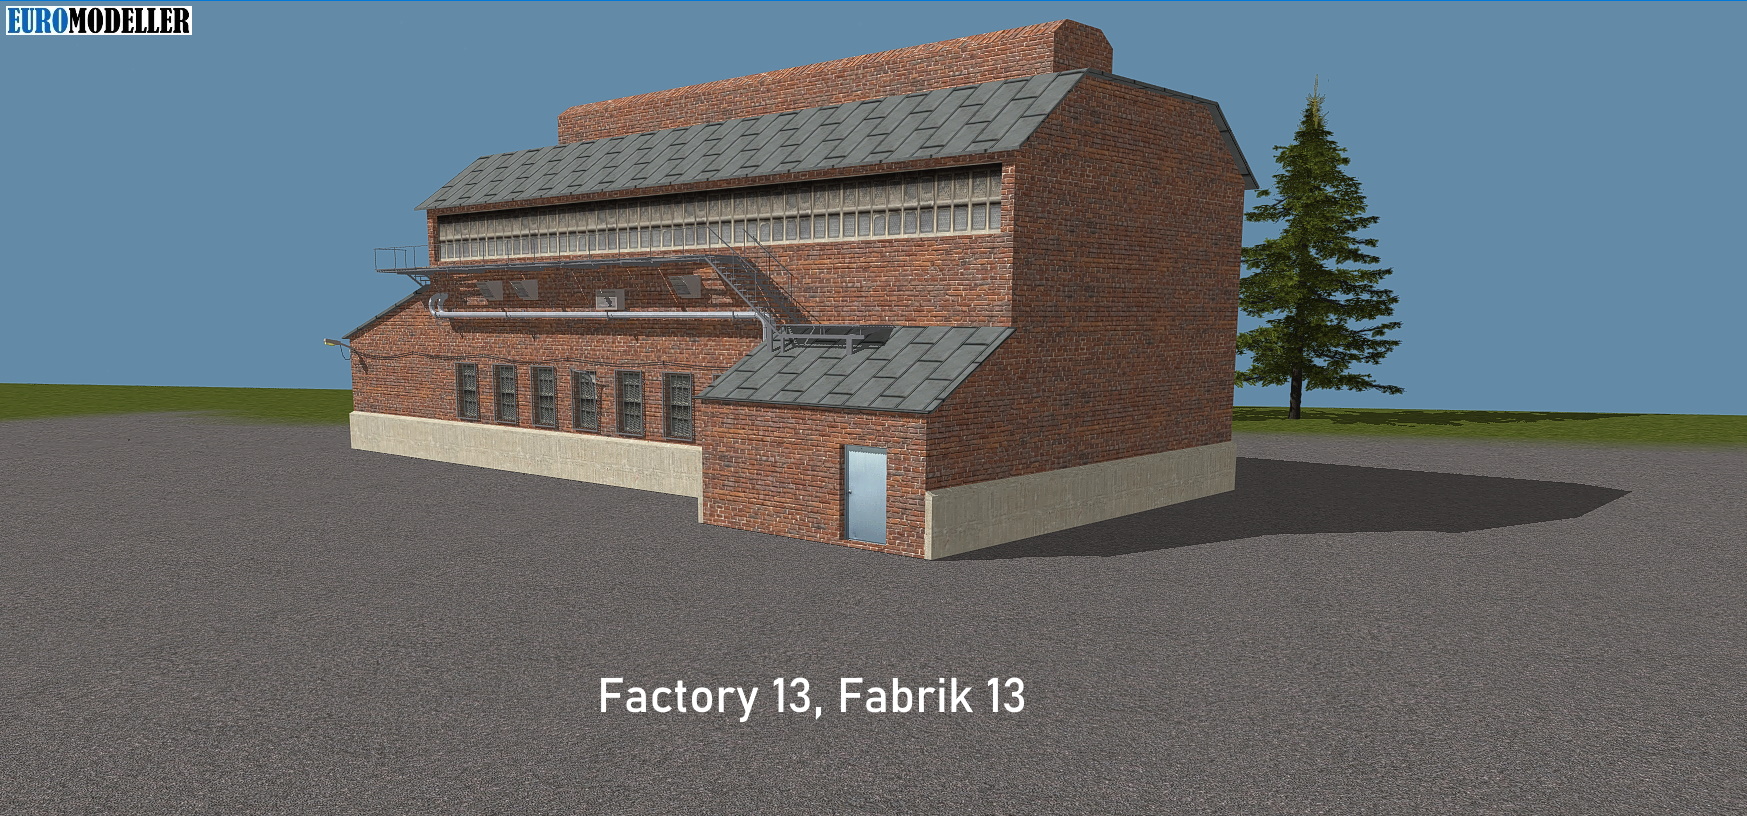 Factory 13, Fabrik 13